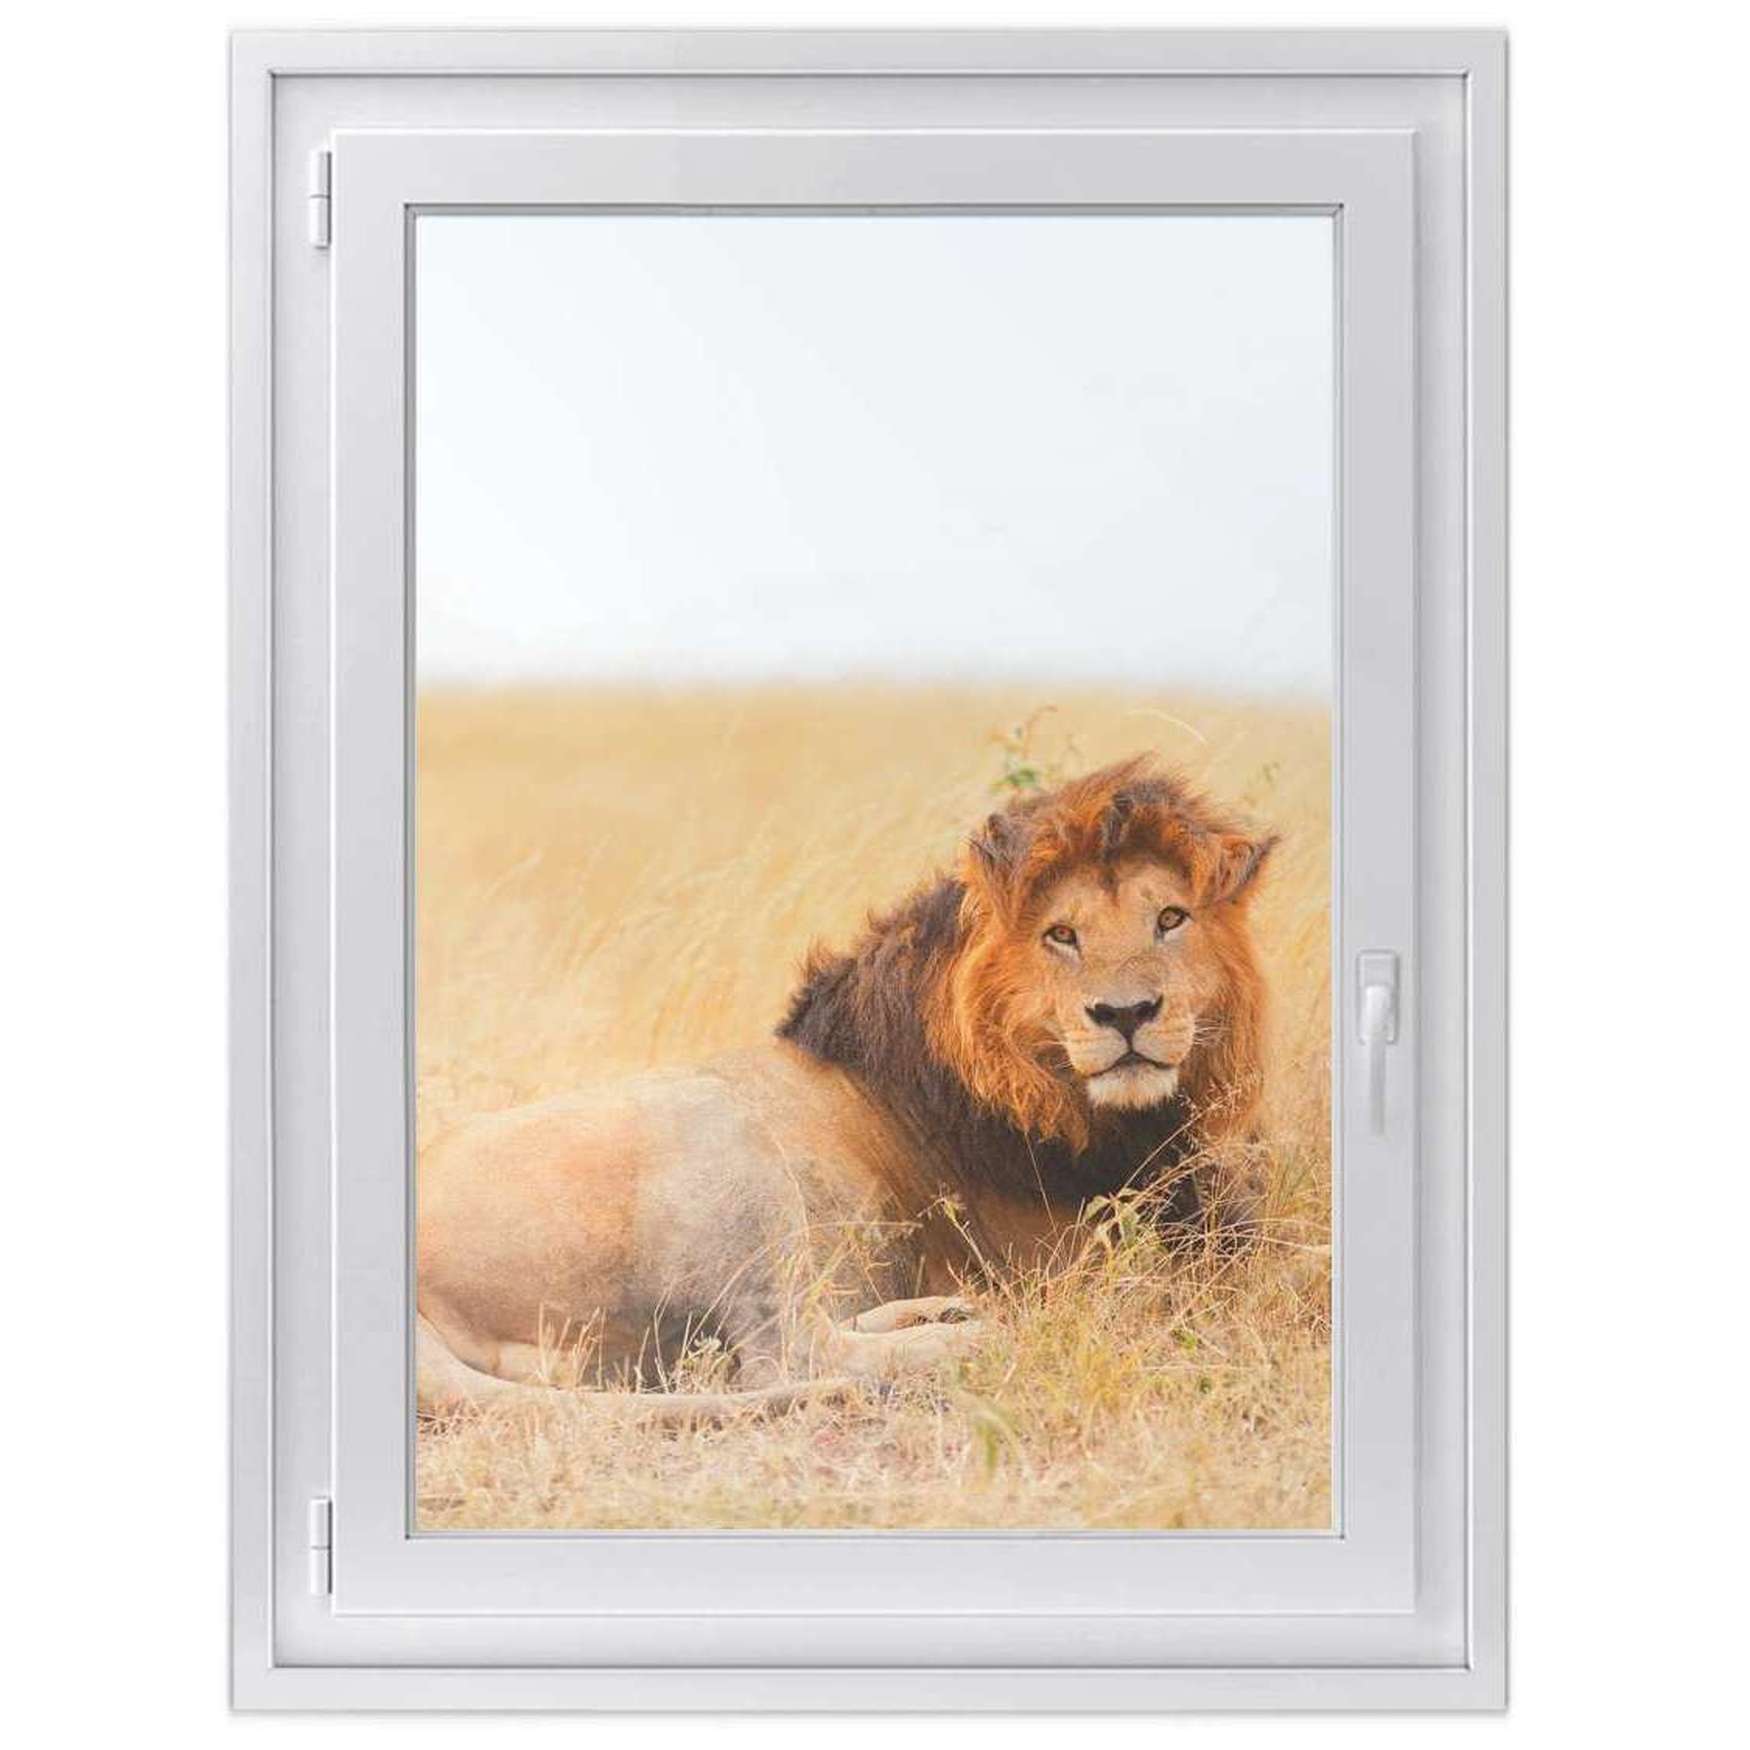 Fensterfolie [hoch] - Design: Lion King 50x70 cm von creatisto